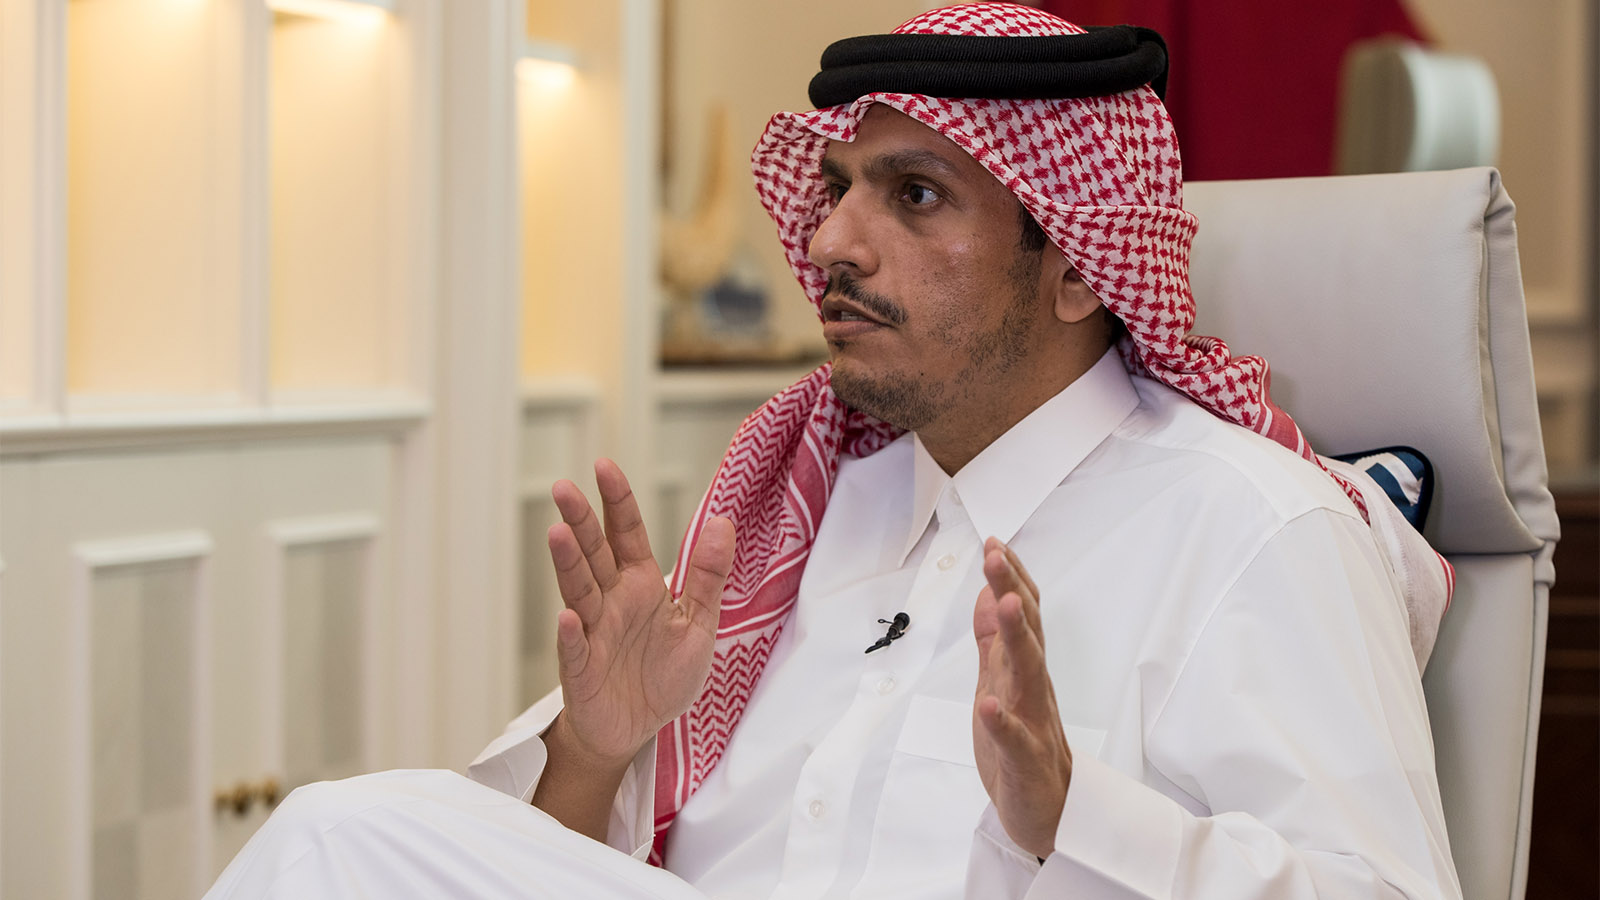 وزير خارجية قطر لـ"المدن":لانريد للبنان أن يسقط..وندرس مشاريع لمساعدته